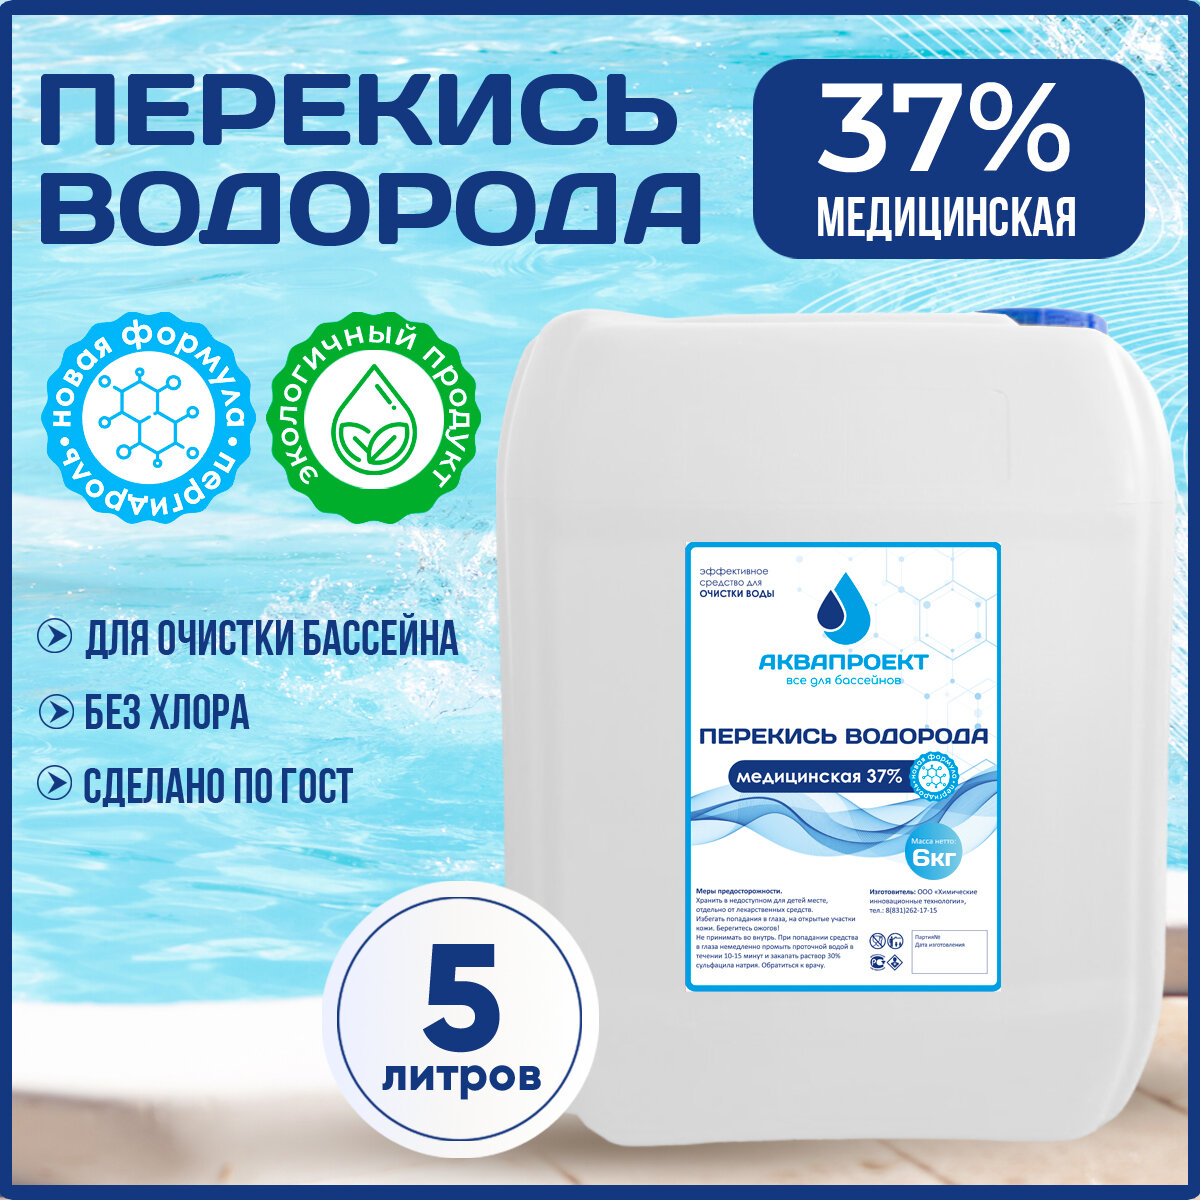 Перекись водорода медицинская для бассейна, канистра 5 литров / Пероксид 37% для очистки воды / Химия от цветения, водорослей и плесени